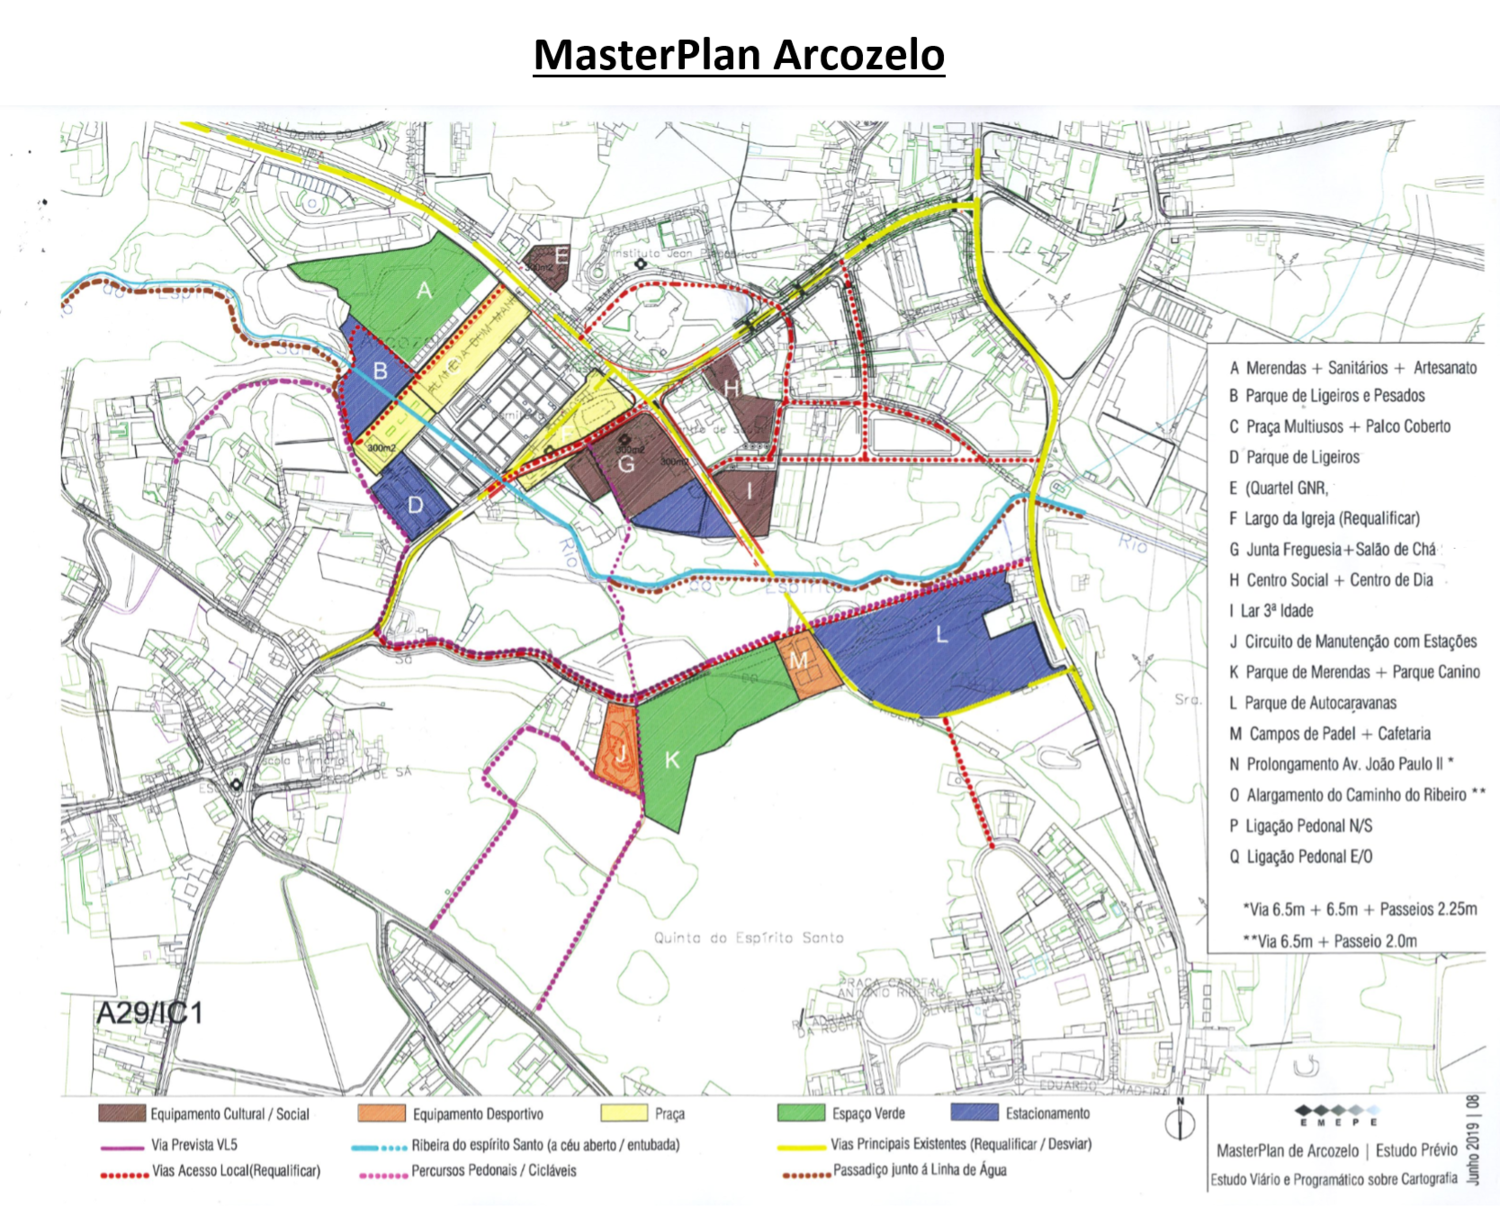 MasterPlan de Arcozelo promete revitalizar centro da freguesia